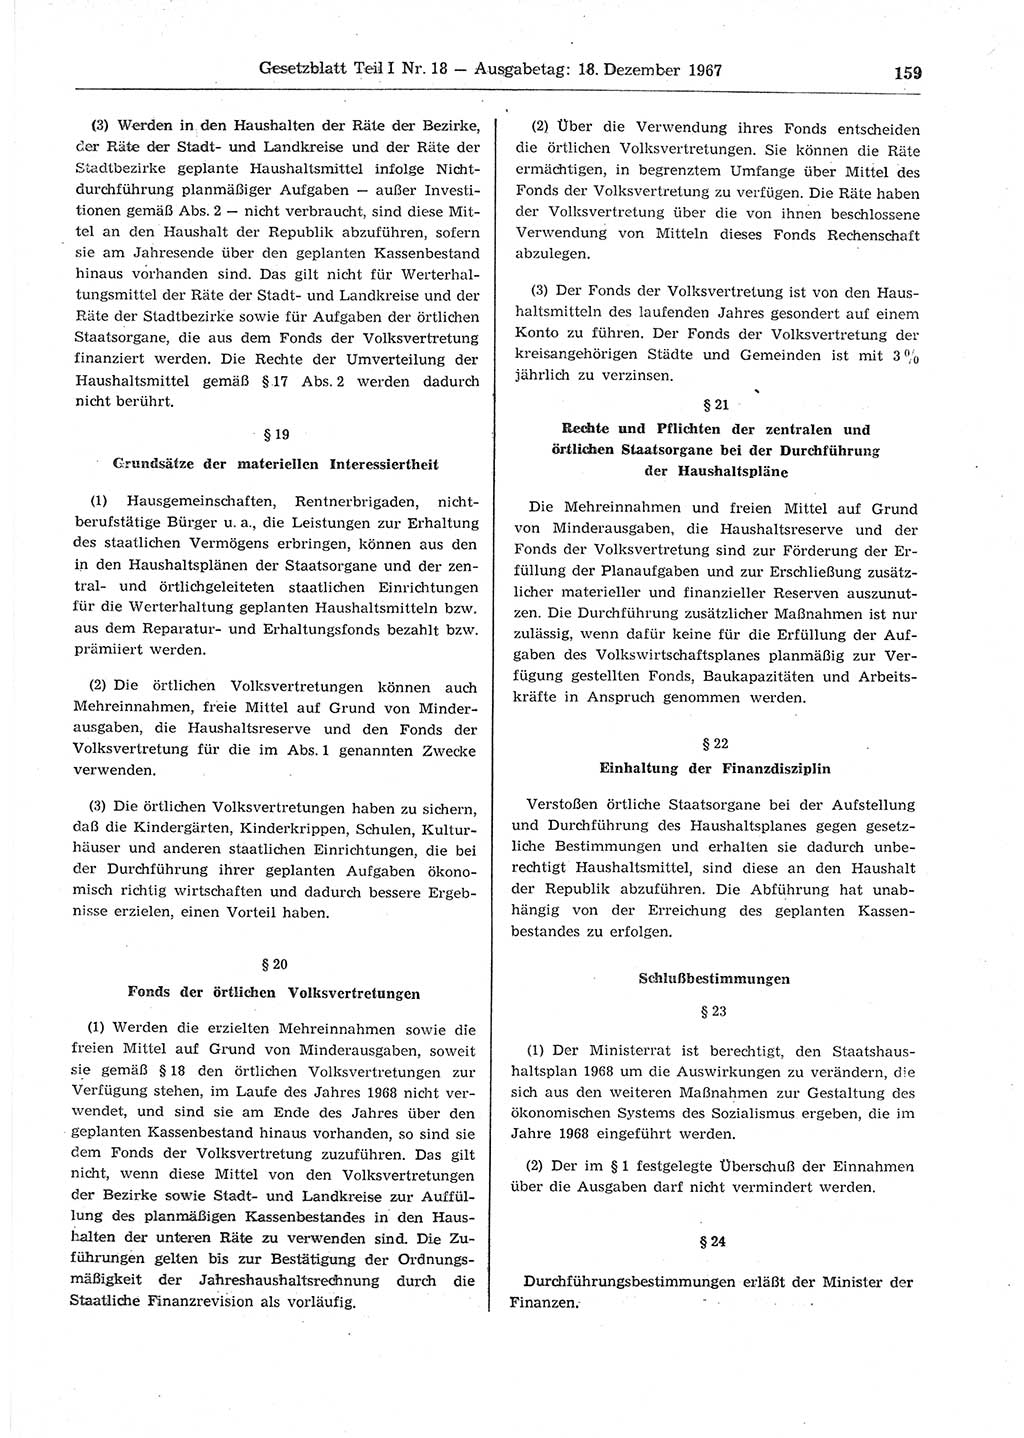 Gesetzblatt (GBl.) der Deutschen Demokratischen Republik (DDR) Teil Ⅰ 1967, Seite 159 (GBl. DDR Ⅰ 1967, S. 159)